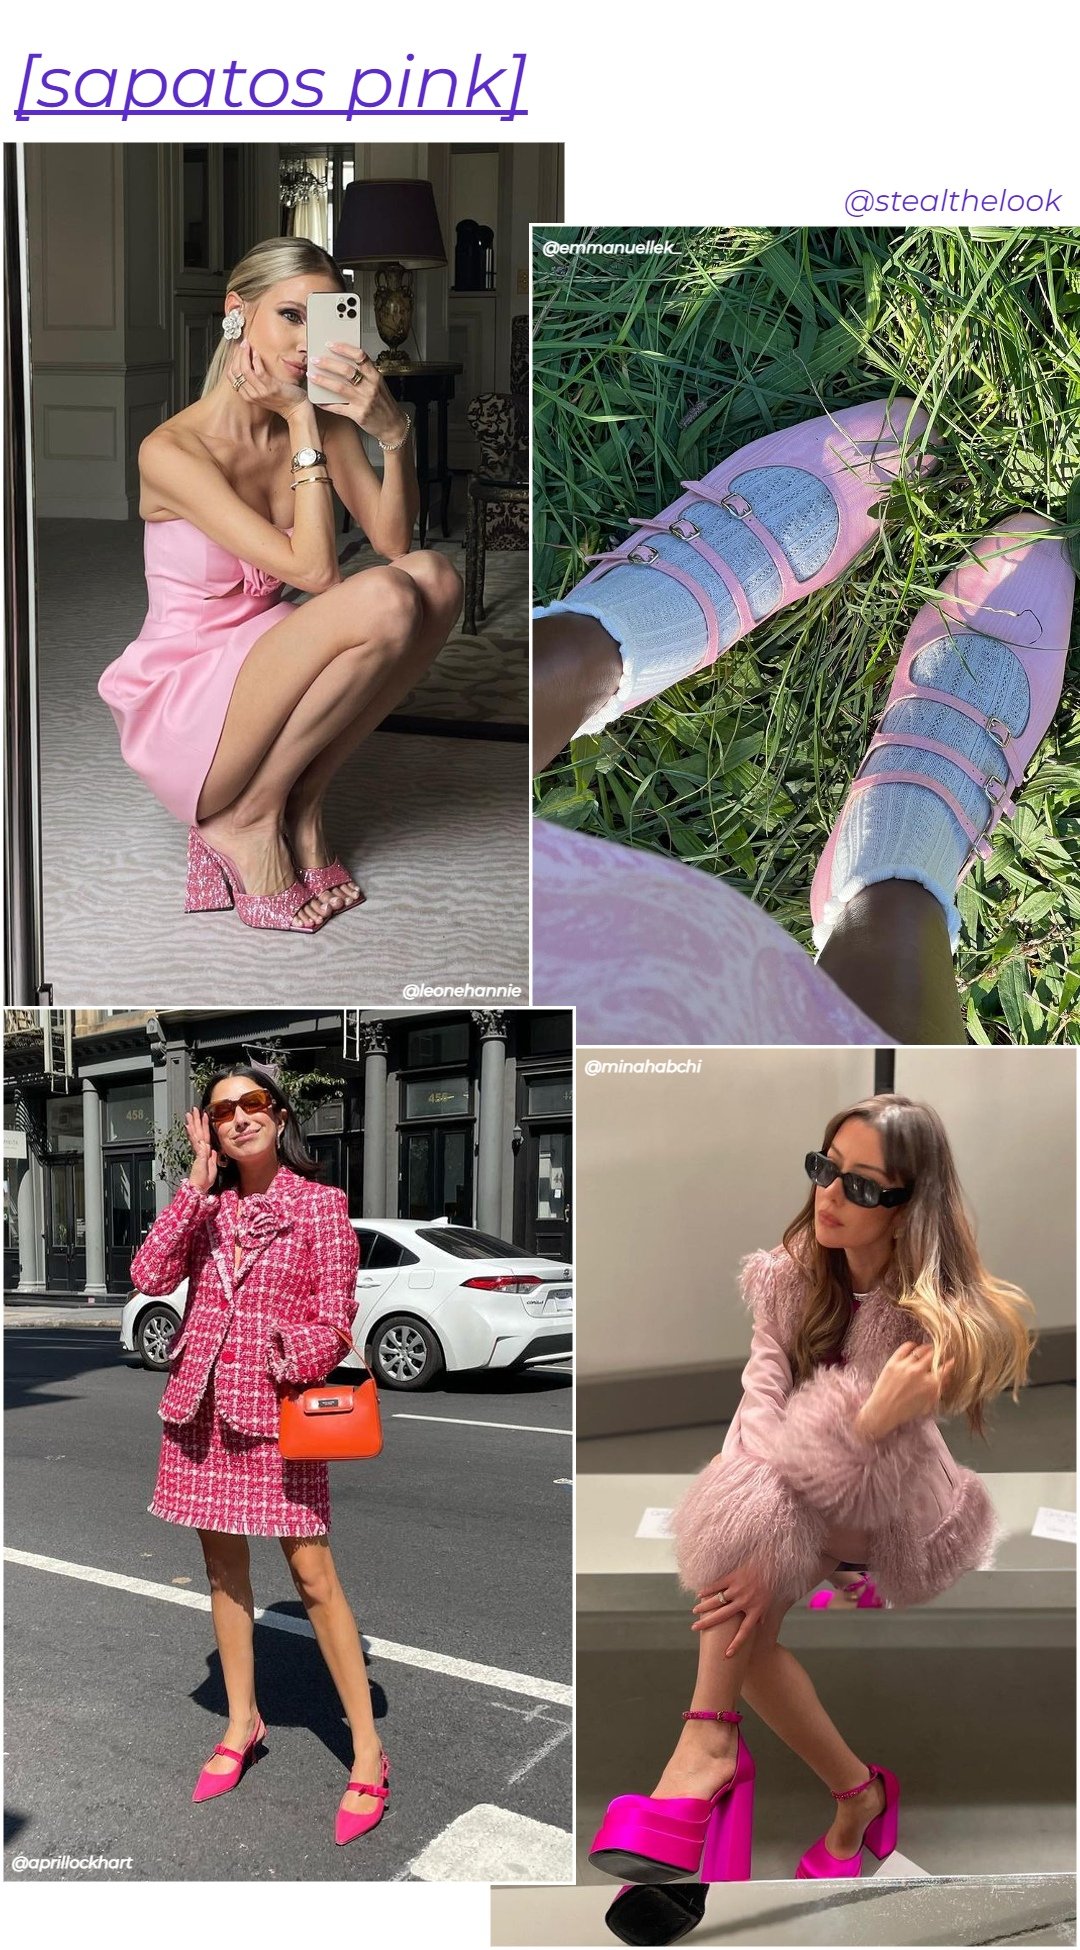 Sandálias coloridas - roupas rosas - sapato pink - inverno - colagem com quato mulheres diferentes usando sapatos cor-de-rosa - https://stealthelook.com.br